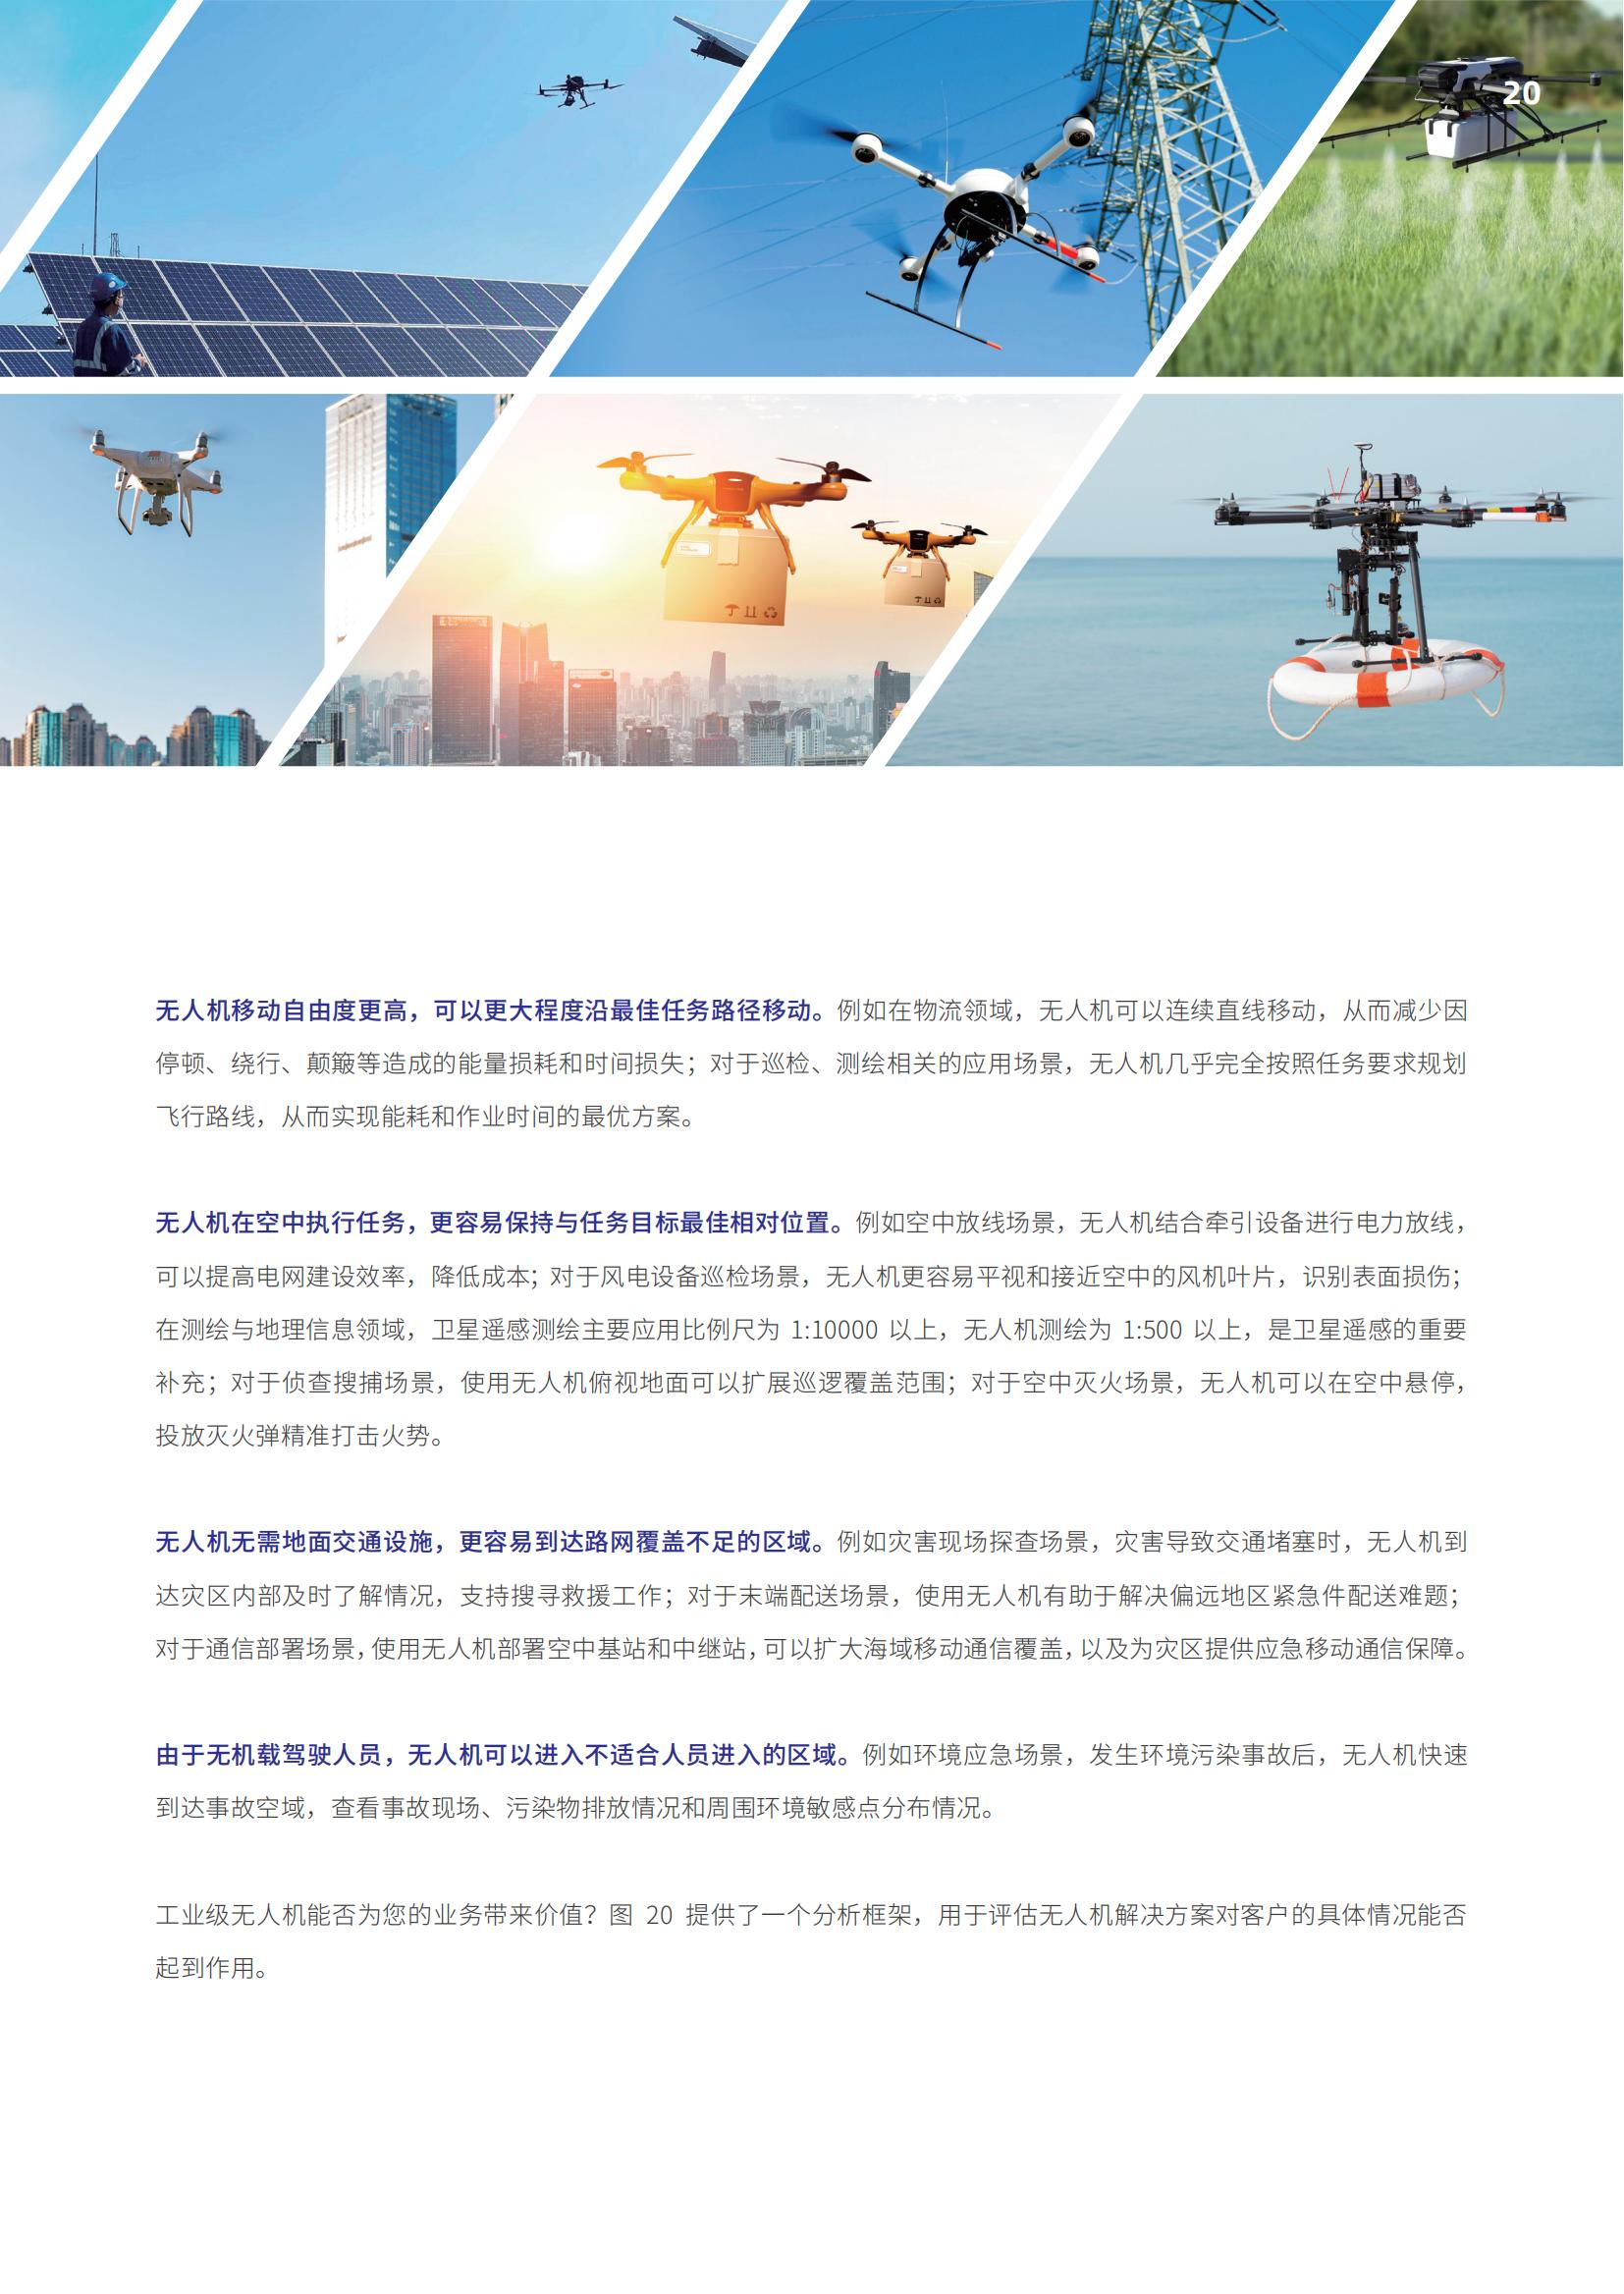 佩信集团2022行业展望 工业级无人机应用与DaaS前沿洞察_22.jpg